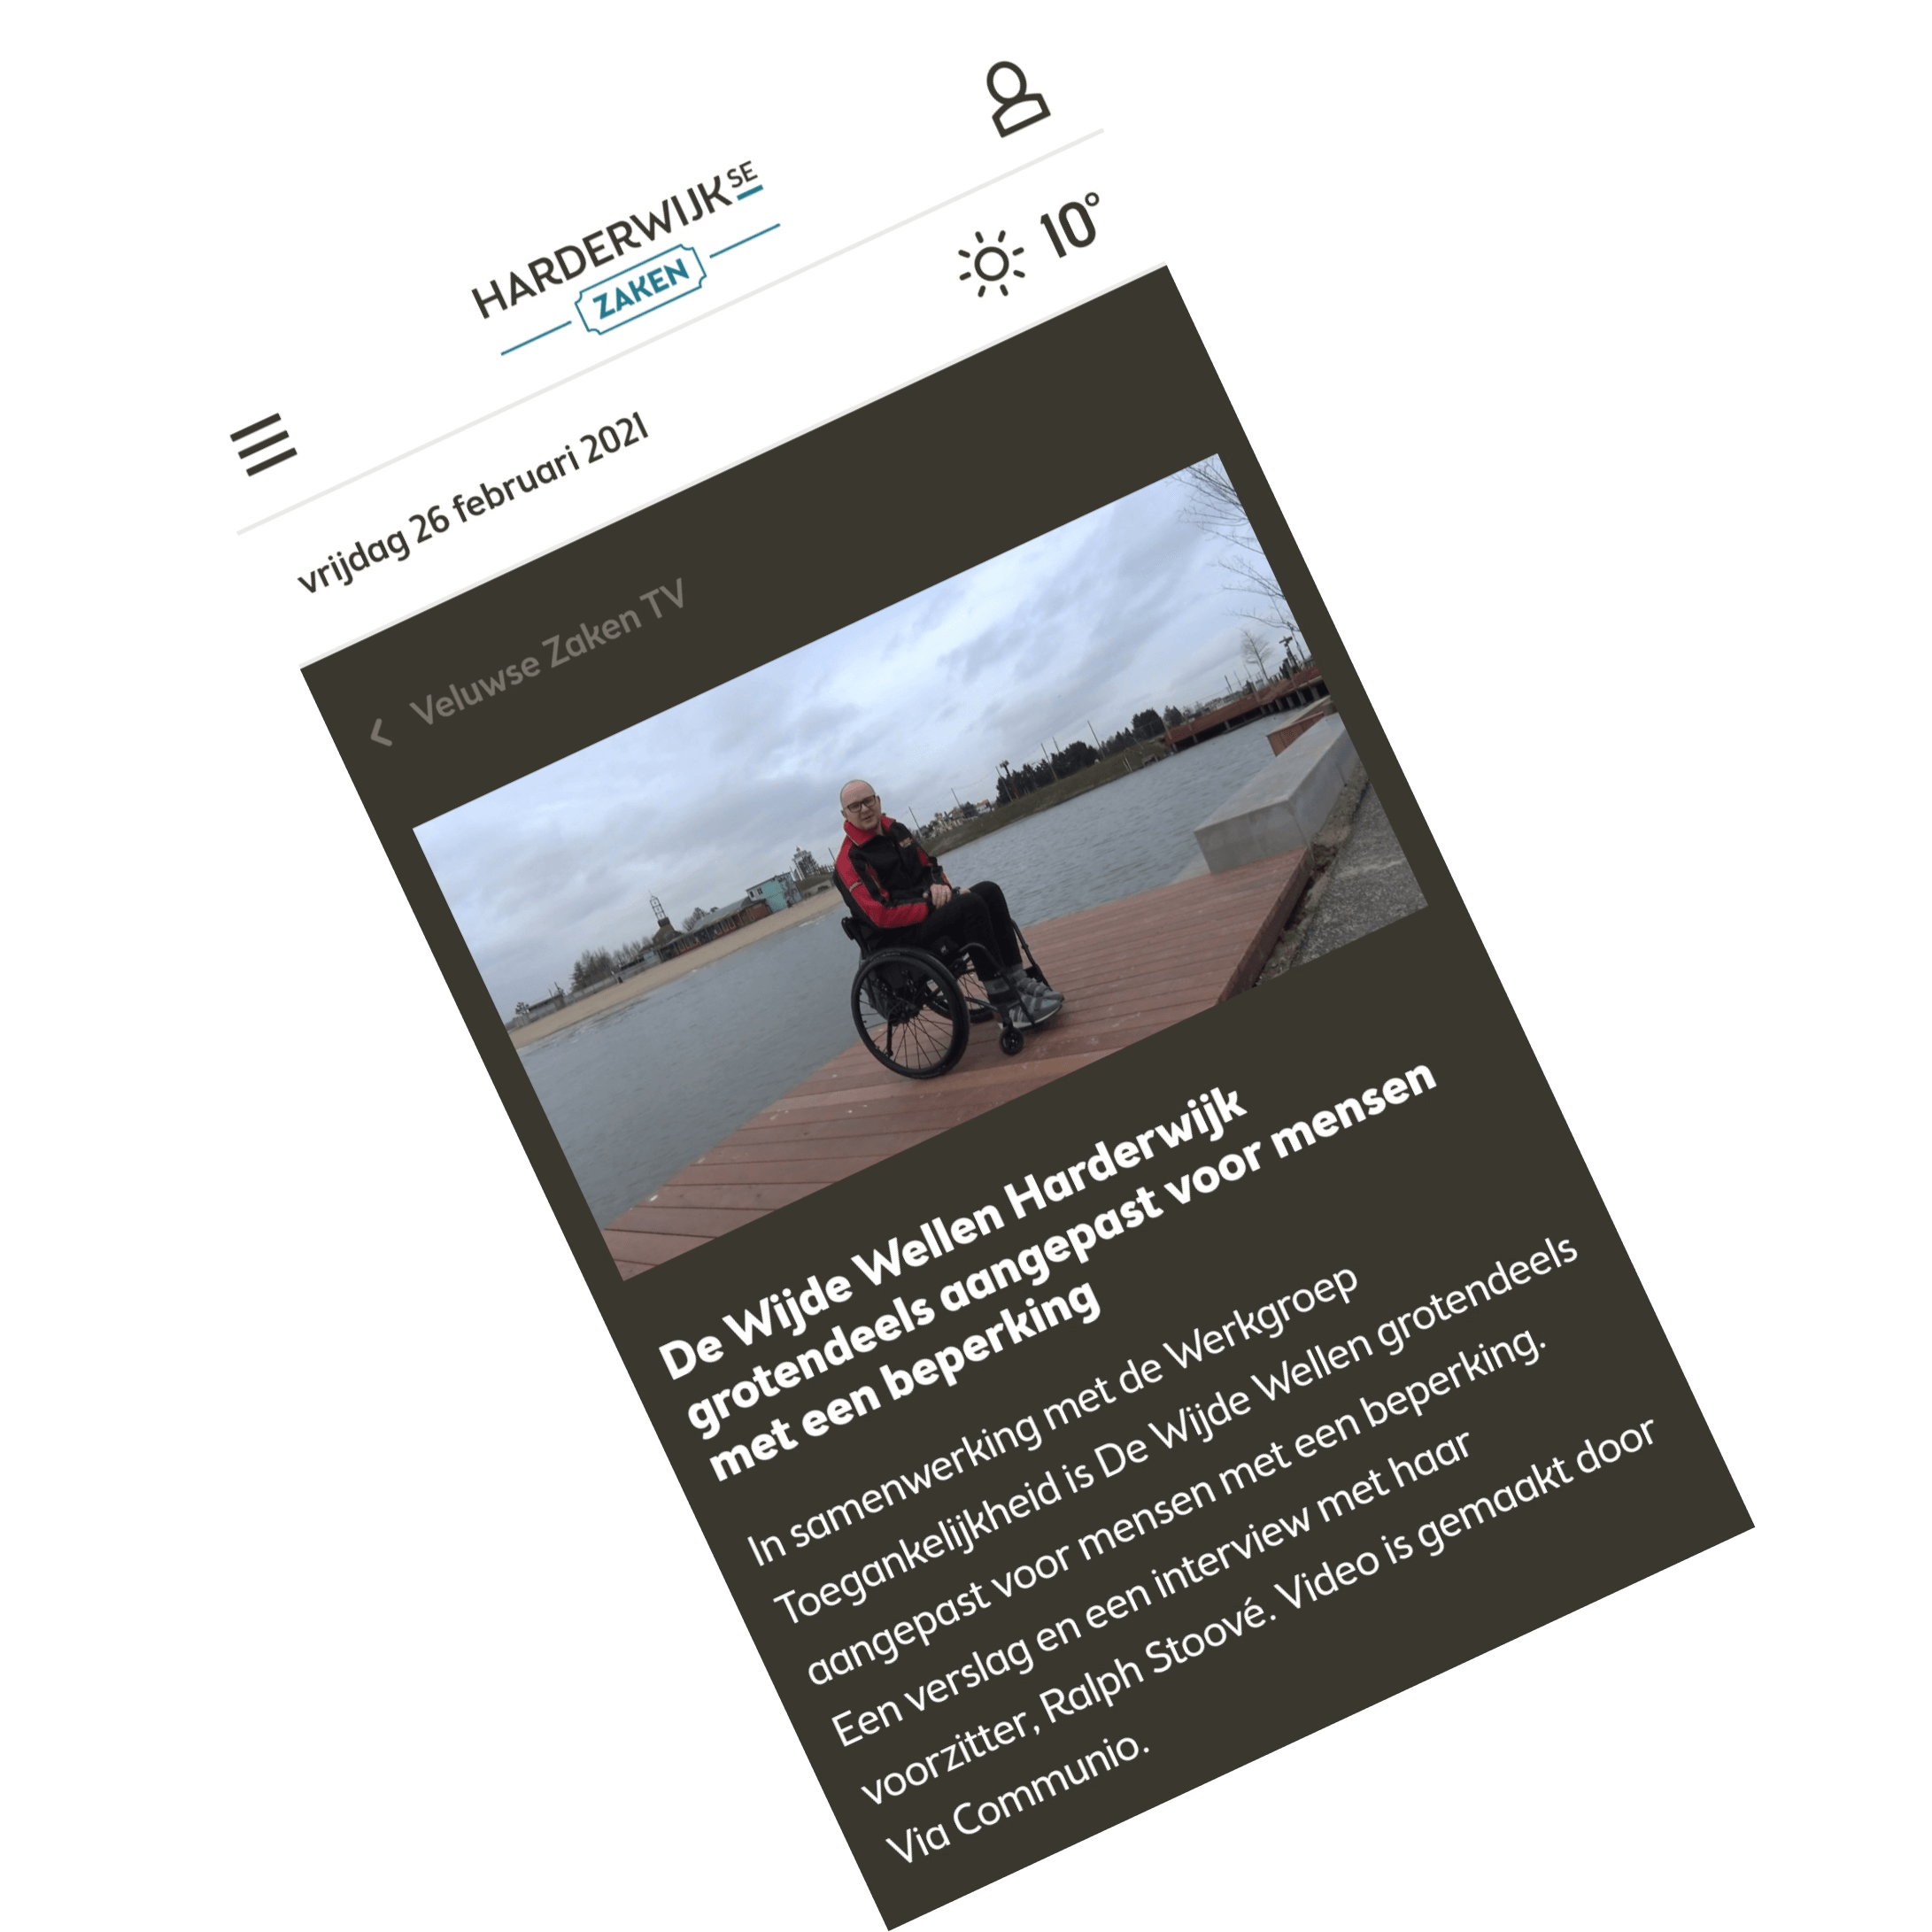 screenshot van artikel met Ralph Stoové in rolstoel die in De Wijde Wellen van Harderwijk op een rolstoeltoegankelijke steiger staat